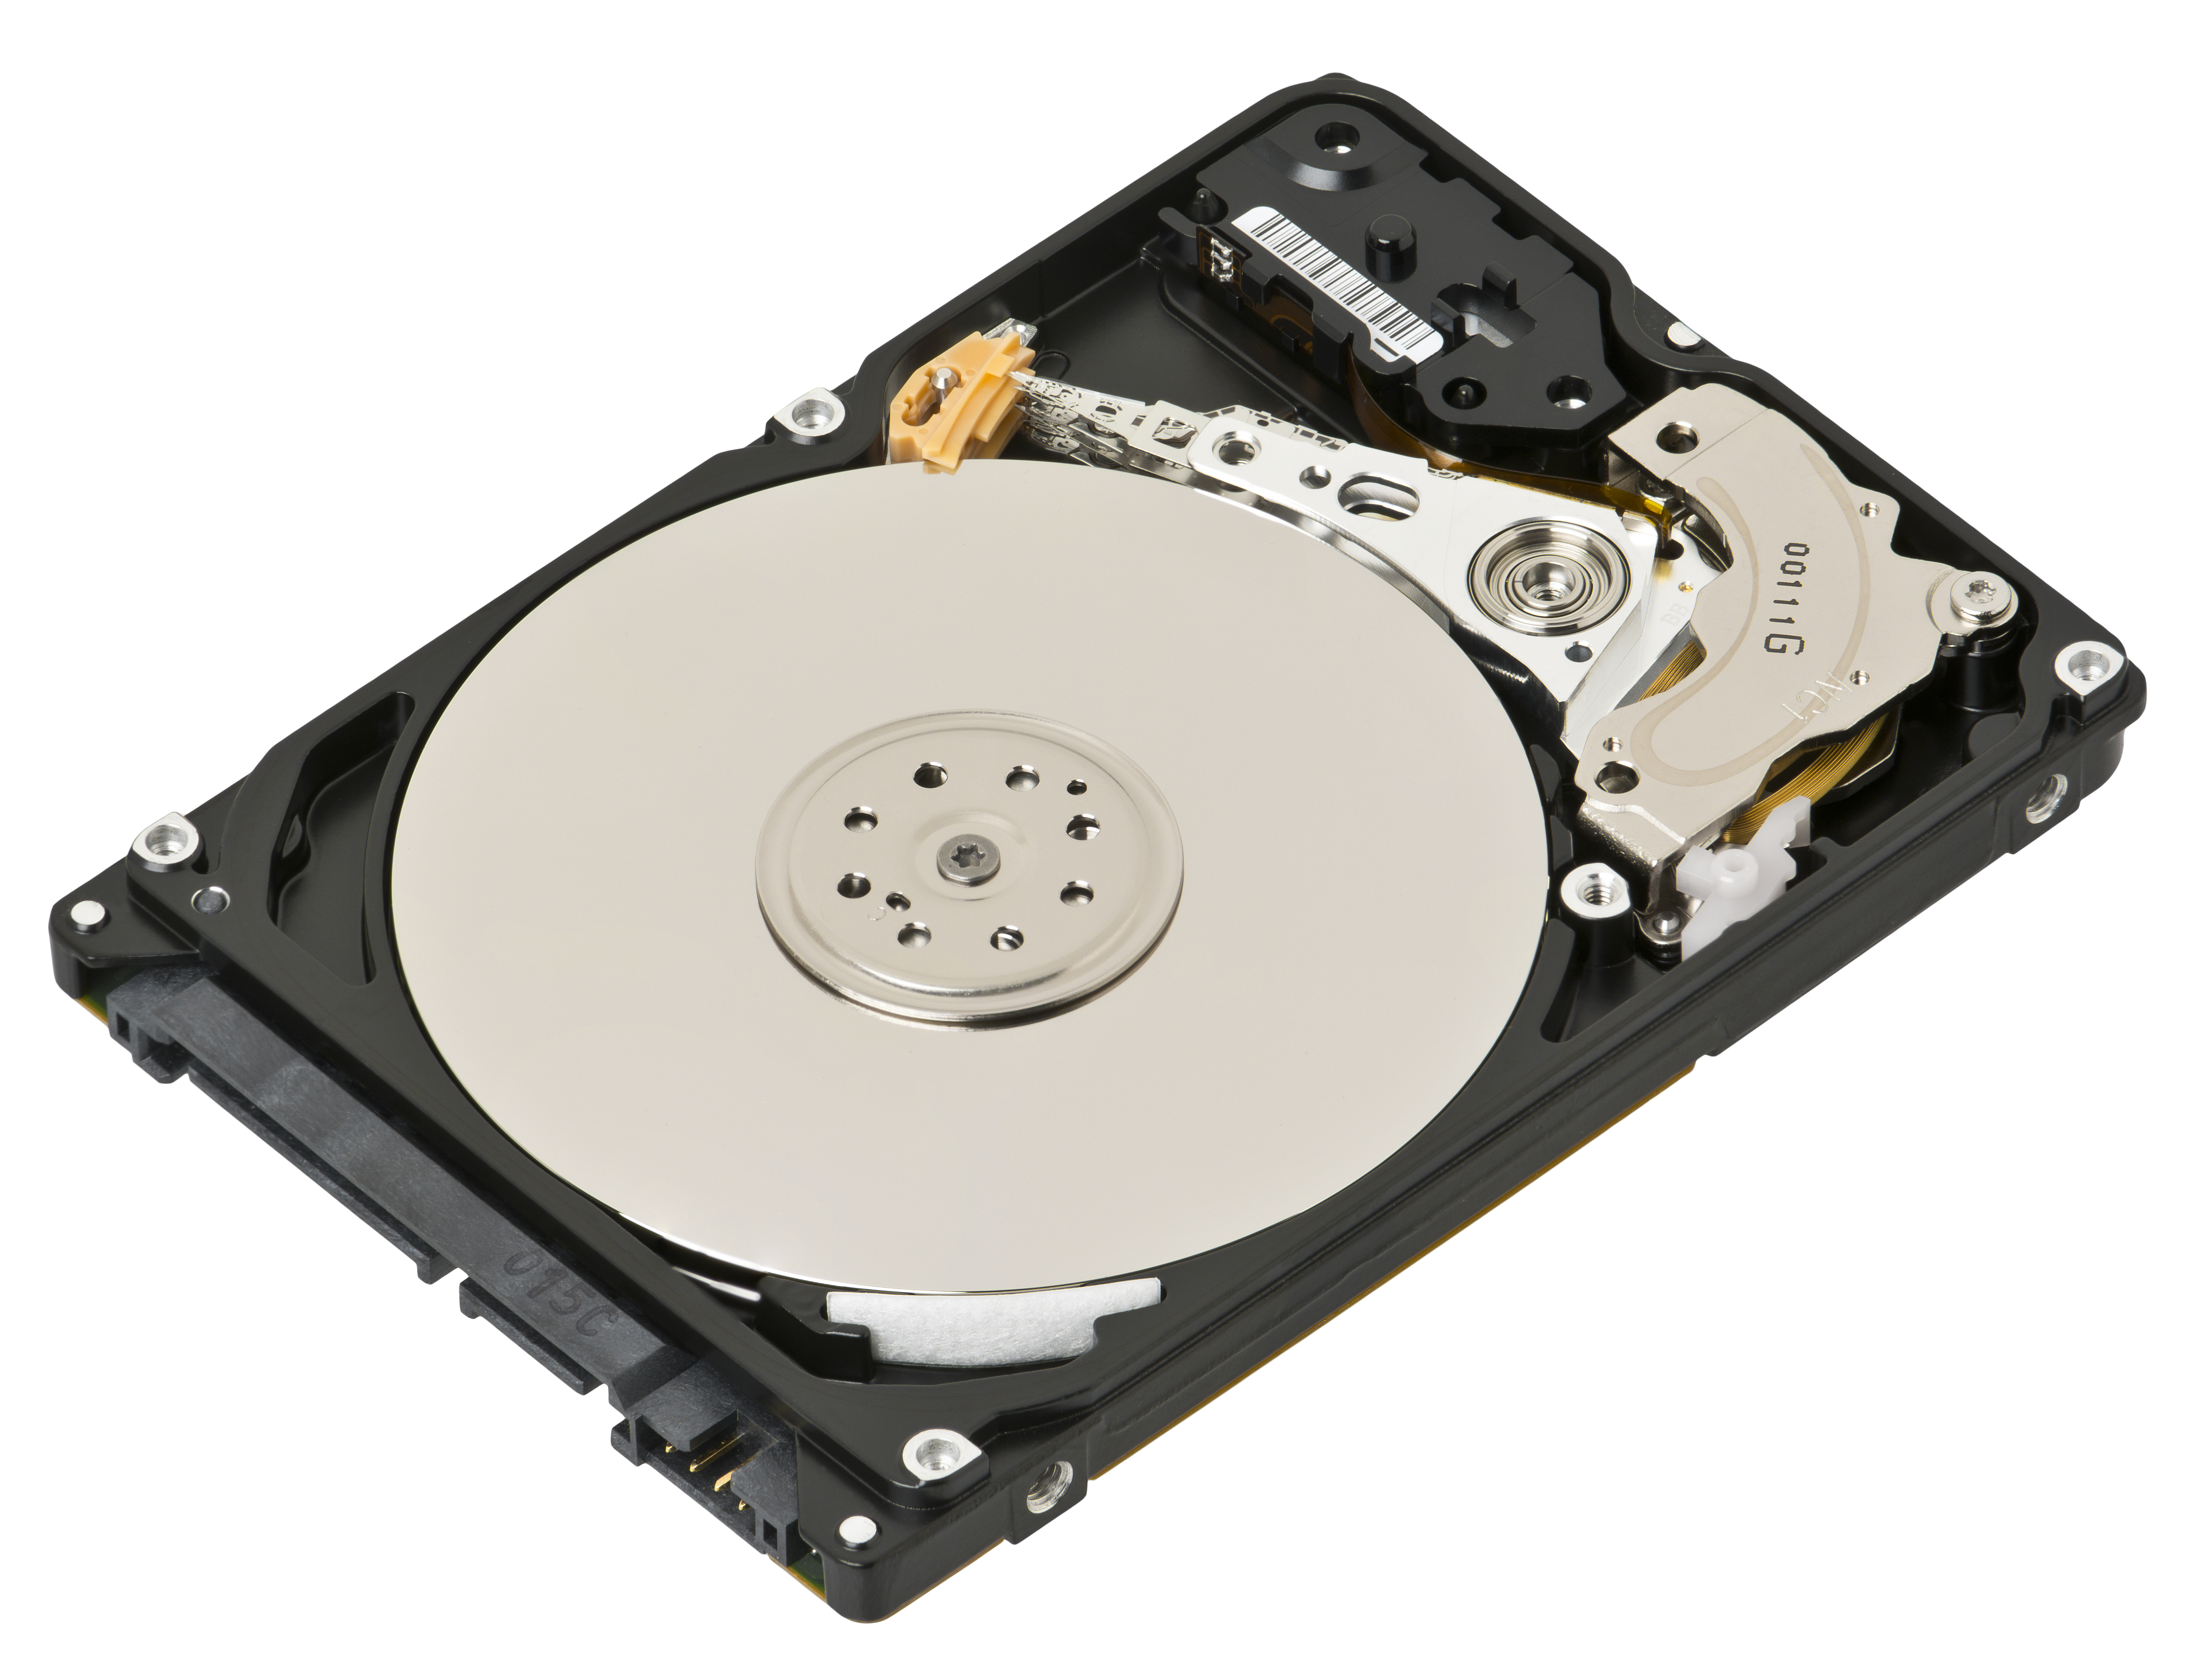 Quantum CX13A2F1 hard disk drive 13GB IDE 3.5 inch